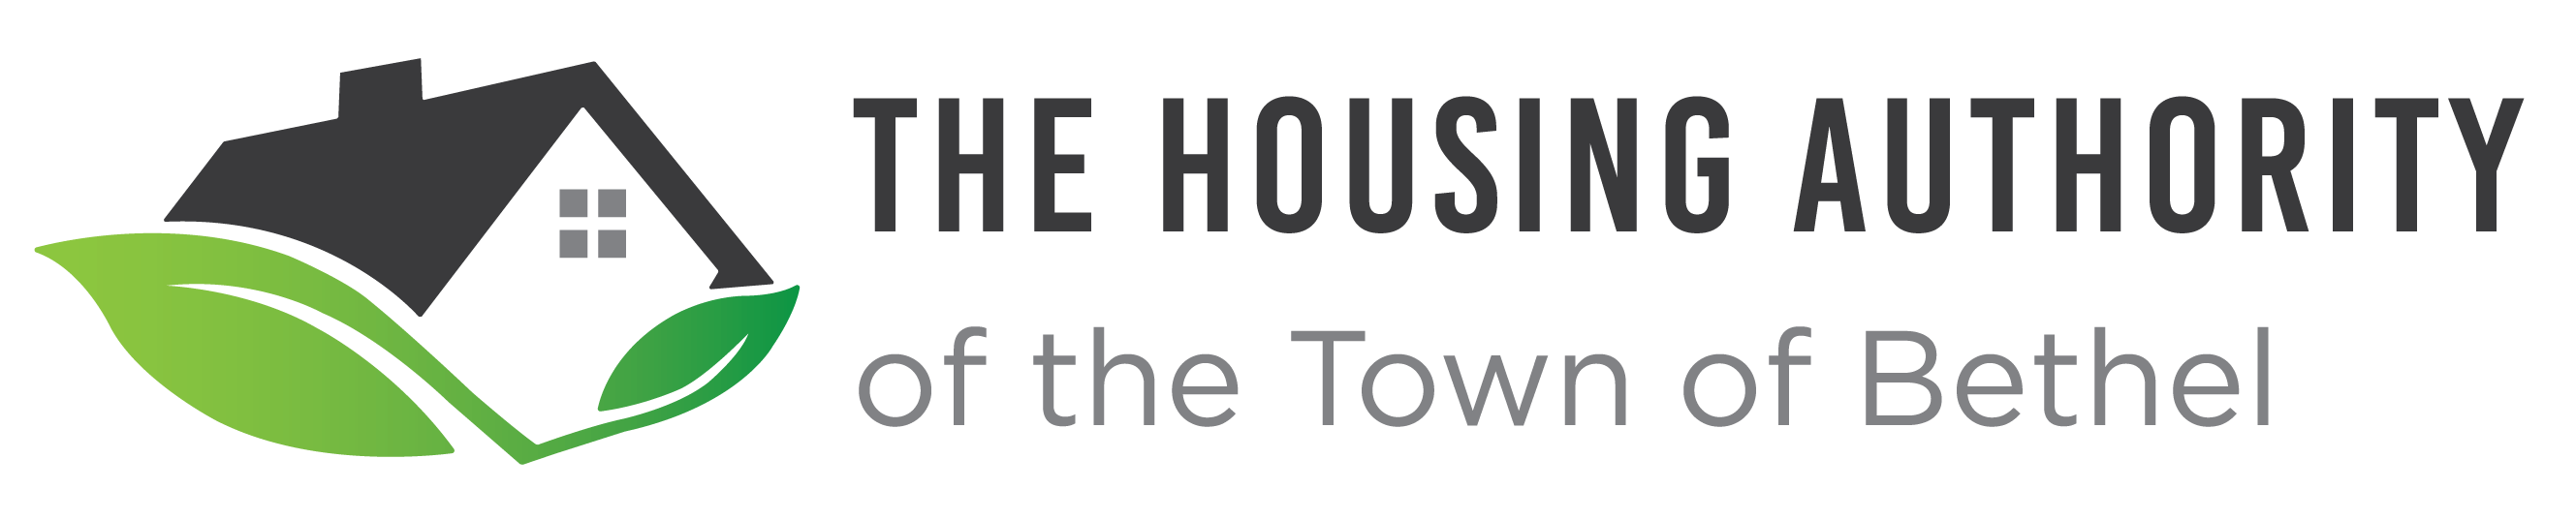 Bethel Housing Authority logo